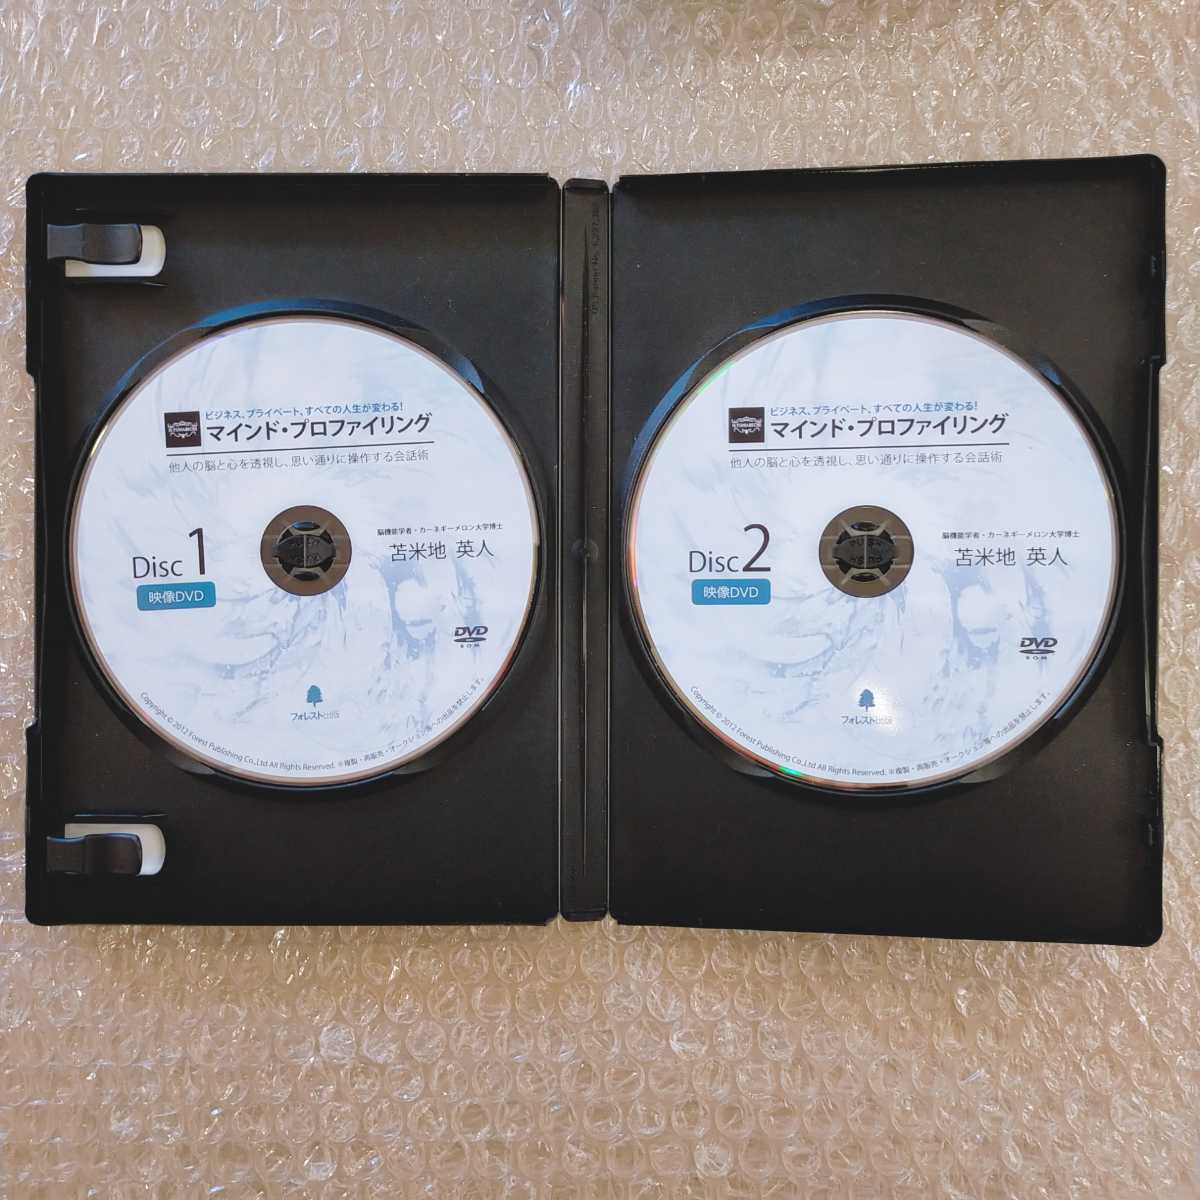 J【即決/送料無料】苫米地英人 マインド・プロファイリング DVD/CD/MP3